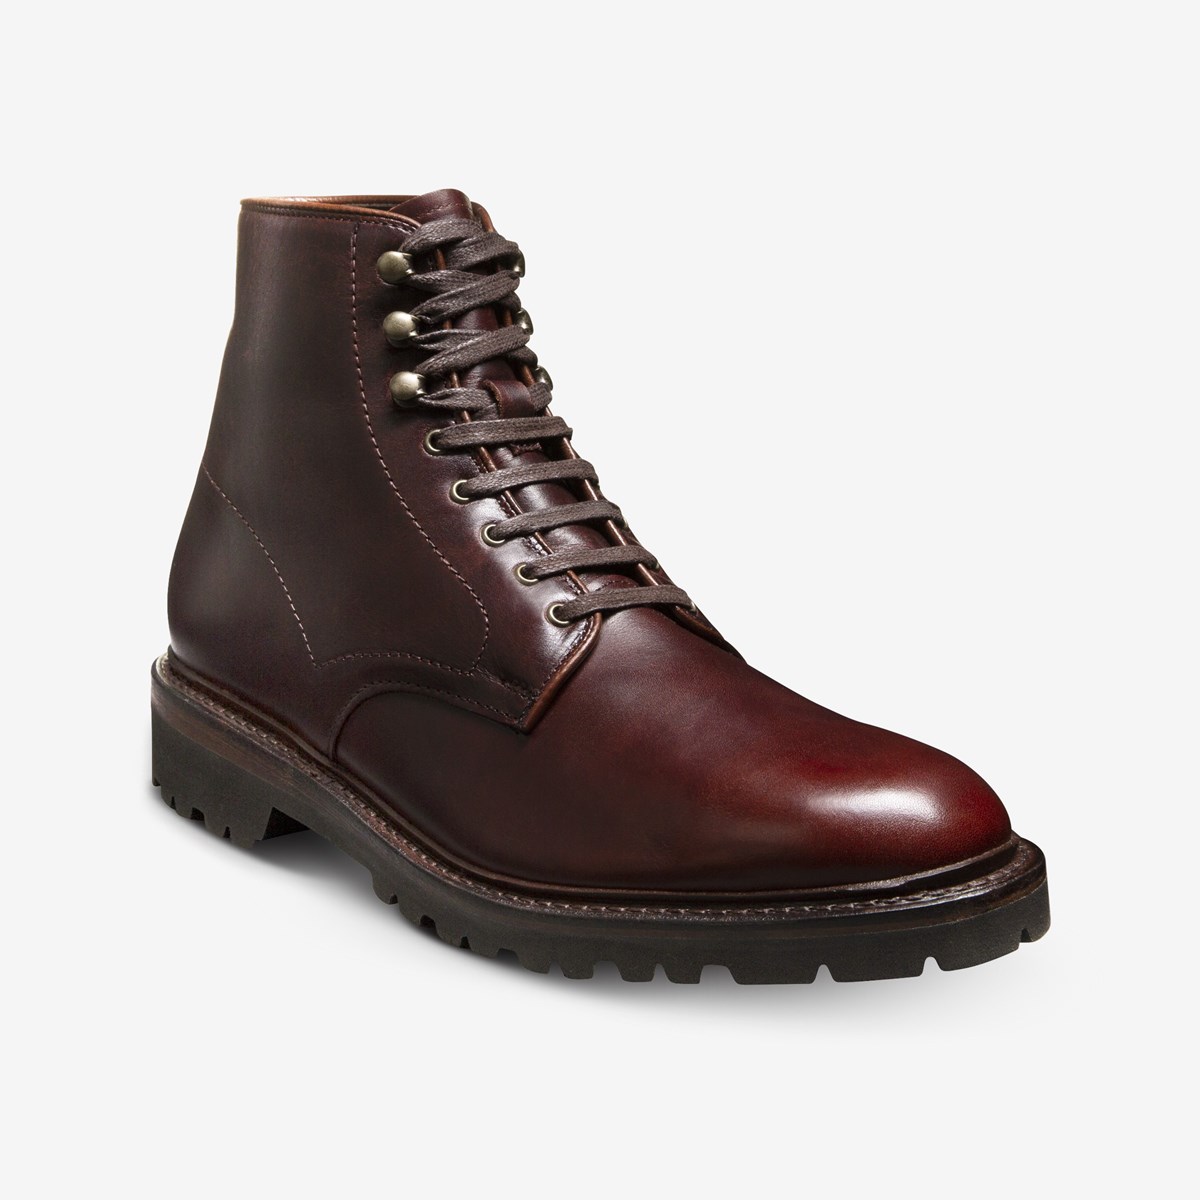 Higgins Mill Weatherproof Boot with Lug Sole | Men's Boots | Allen Edmonds